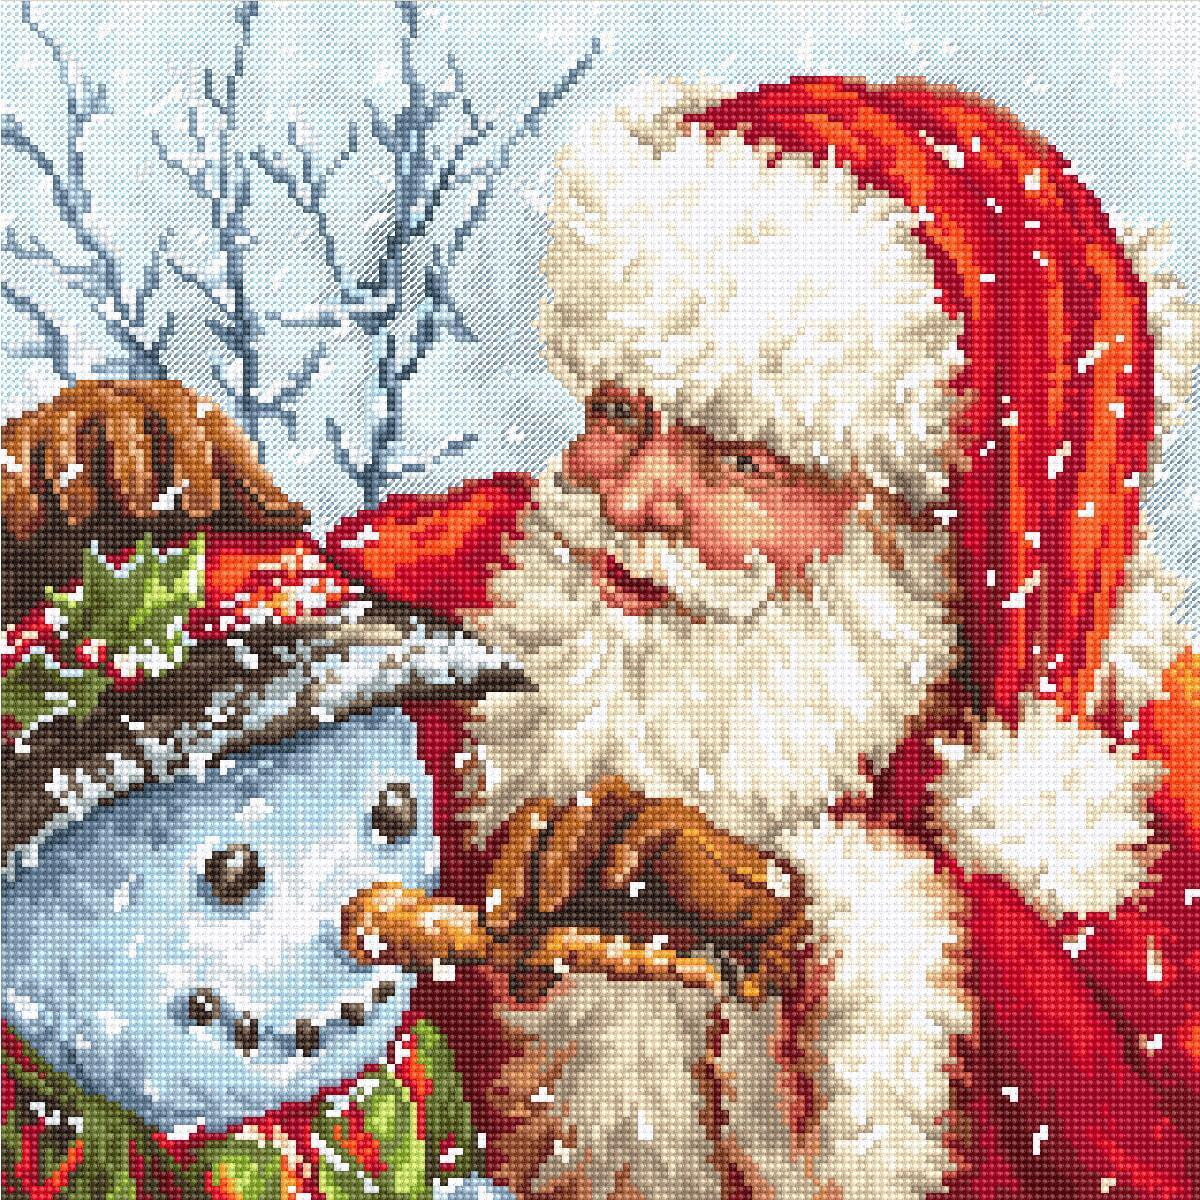 Una escena festiva muestra a un radiante Papá Noel...